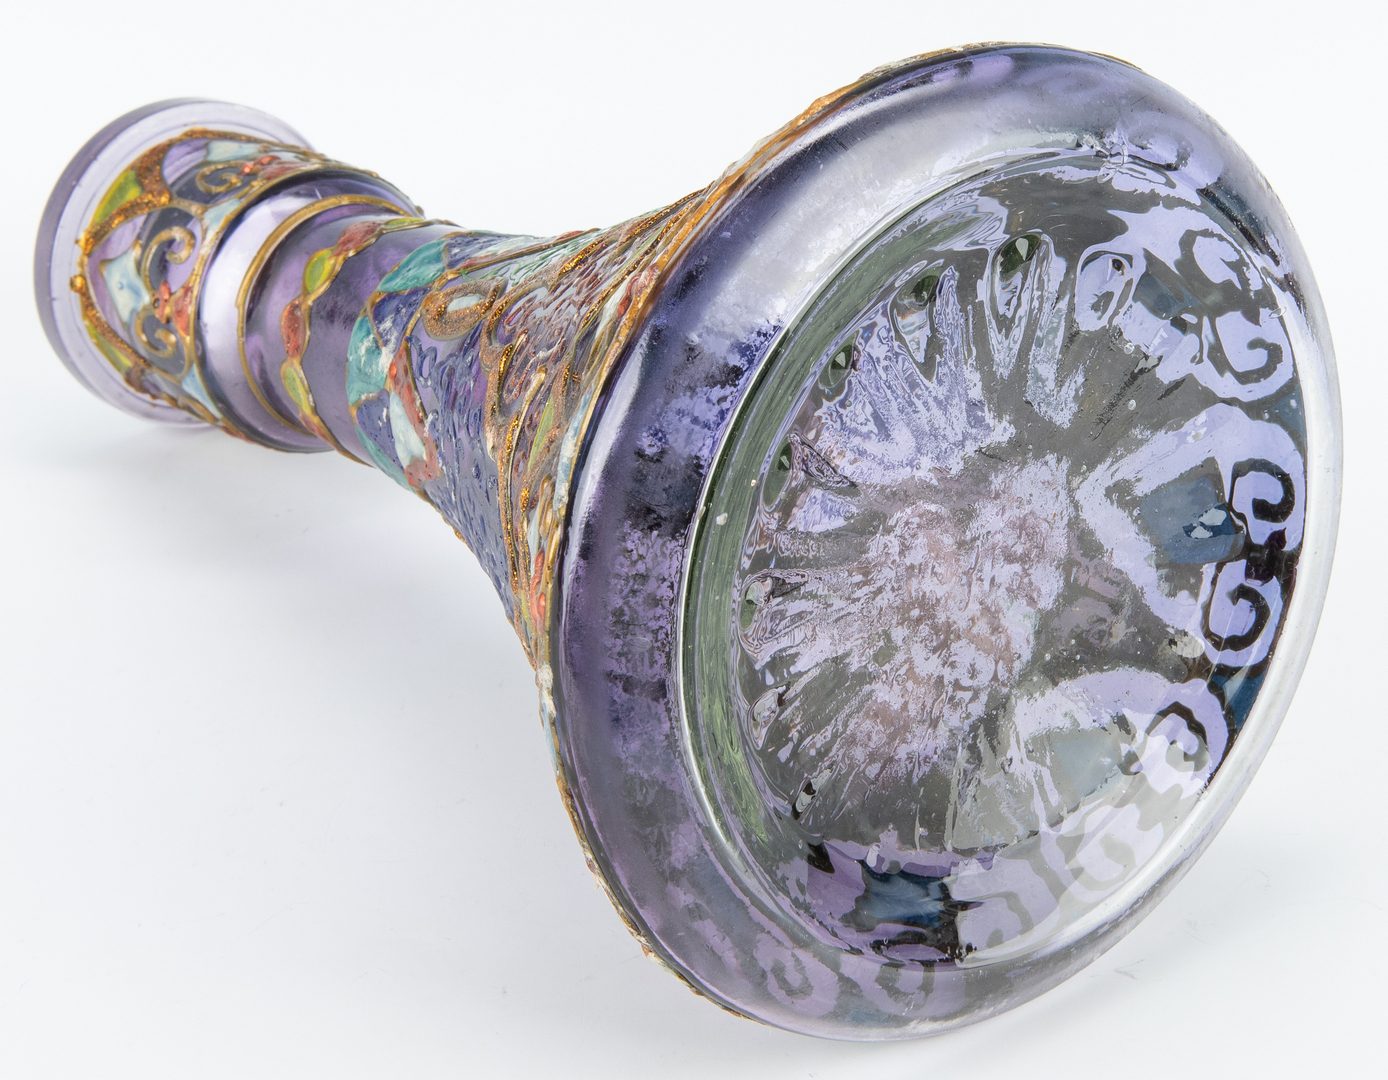 Lot 246: Enameled Moorish Style Art Glass Vase